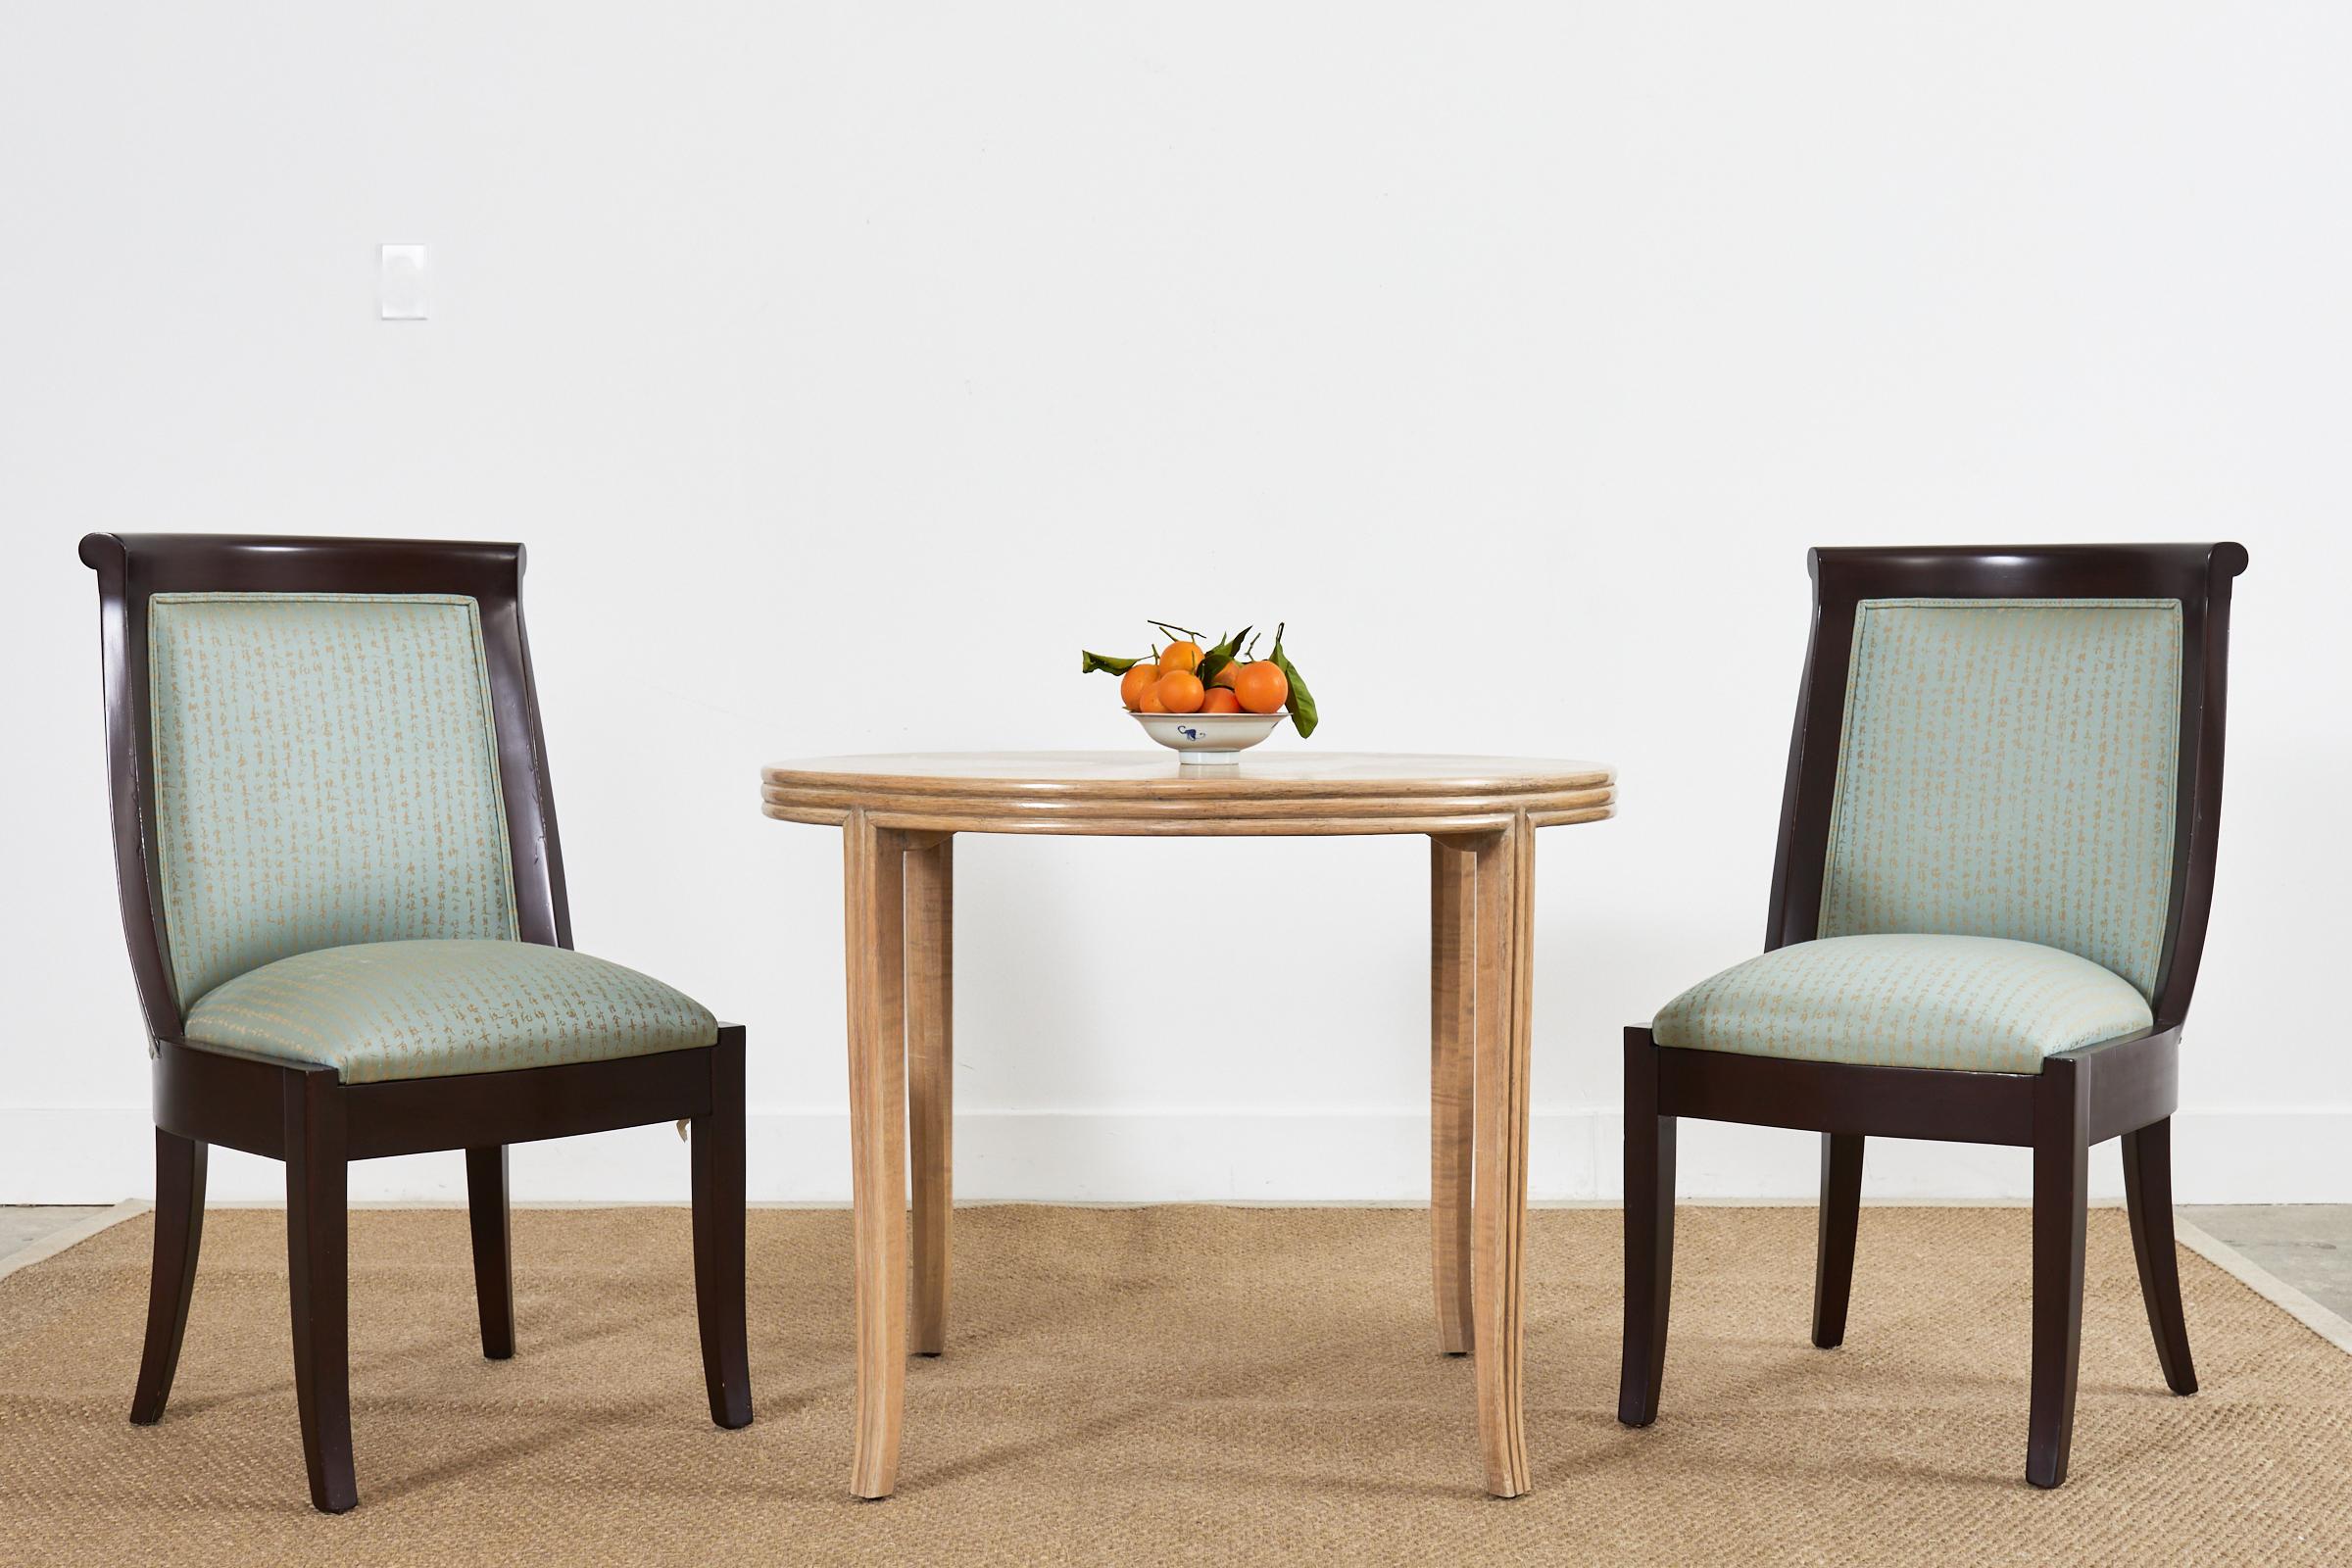 Fantastischer Satz von acht Hartholz-Esszimmerstühlen im modernen Regency-Stil mit geschwungener Rückenlehne. Maßgefertigte Stühle aus dem Designzentrum in San Francisco, die in Spanien hergestellt werden und fast wie Ebenholz lackiert sind.